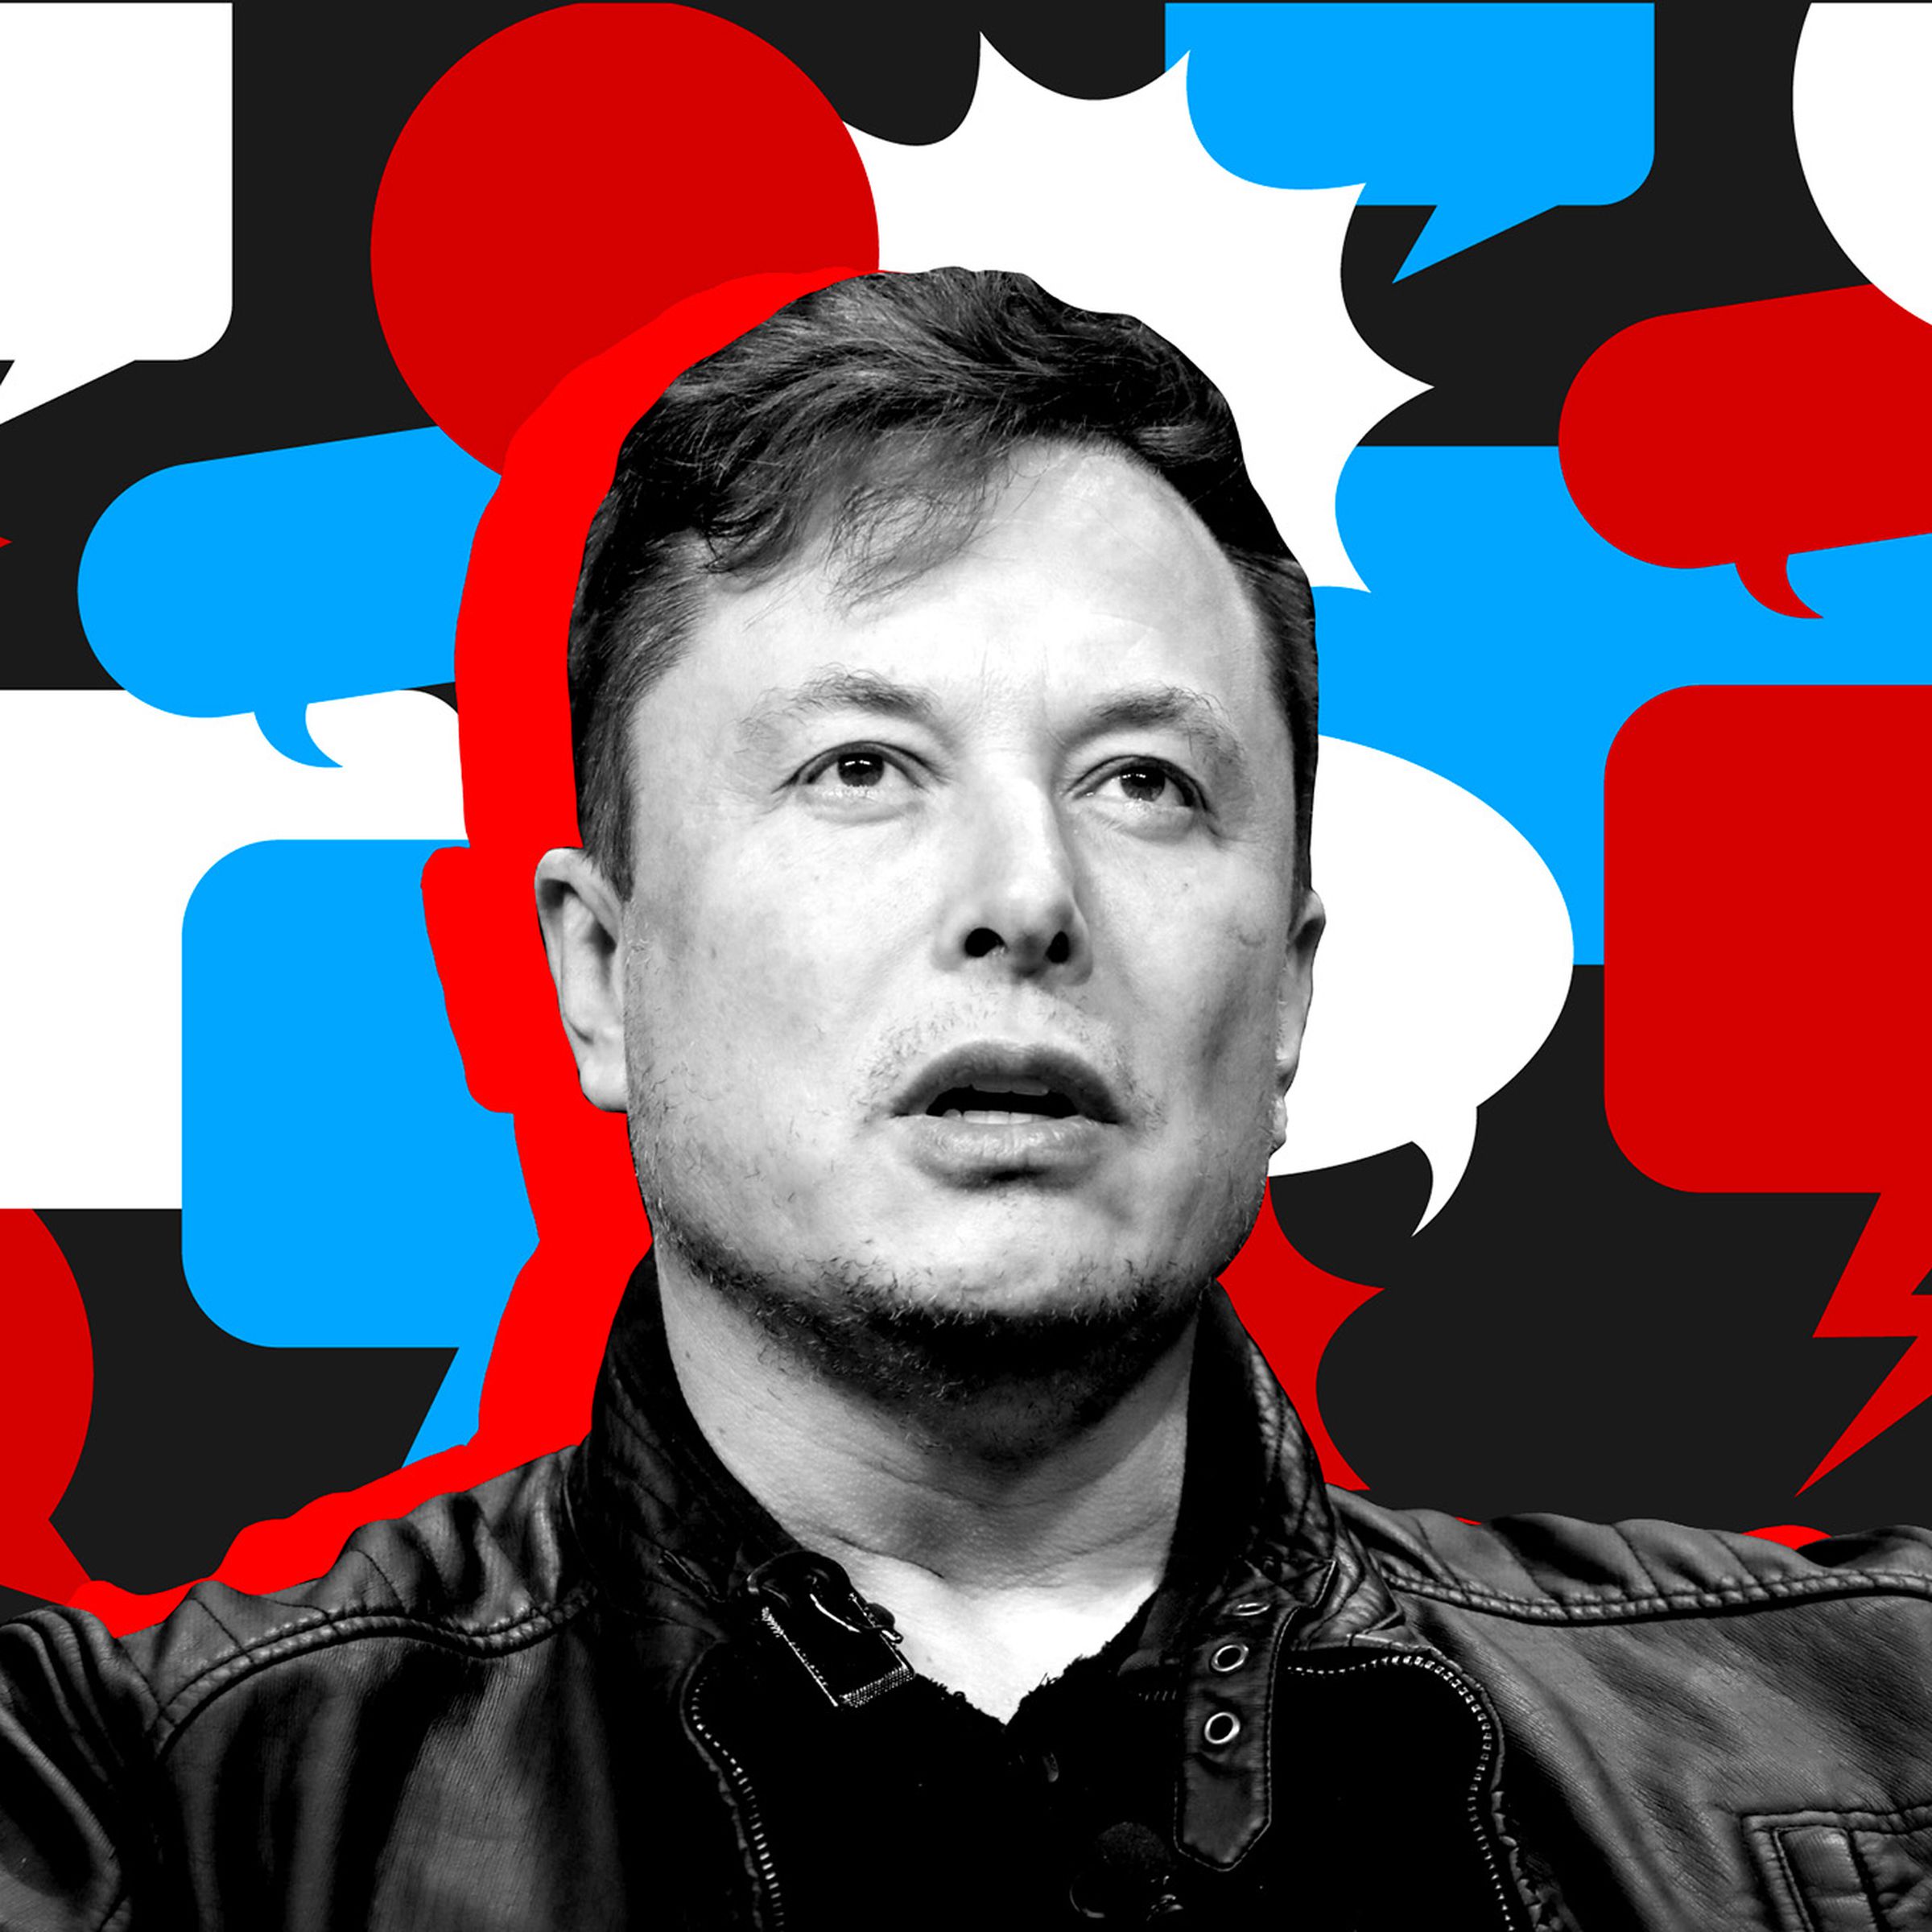 Elon Musk illustration